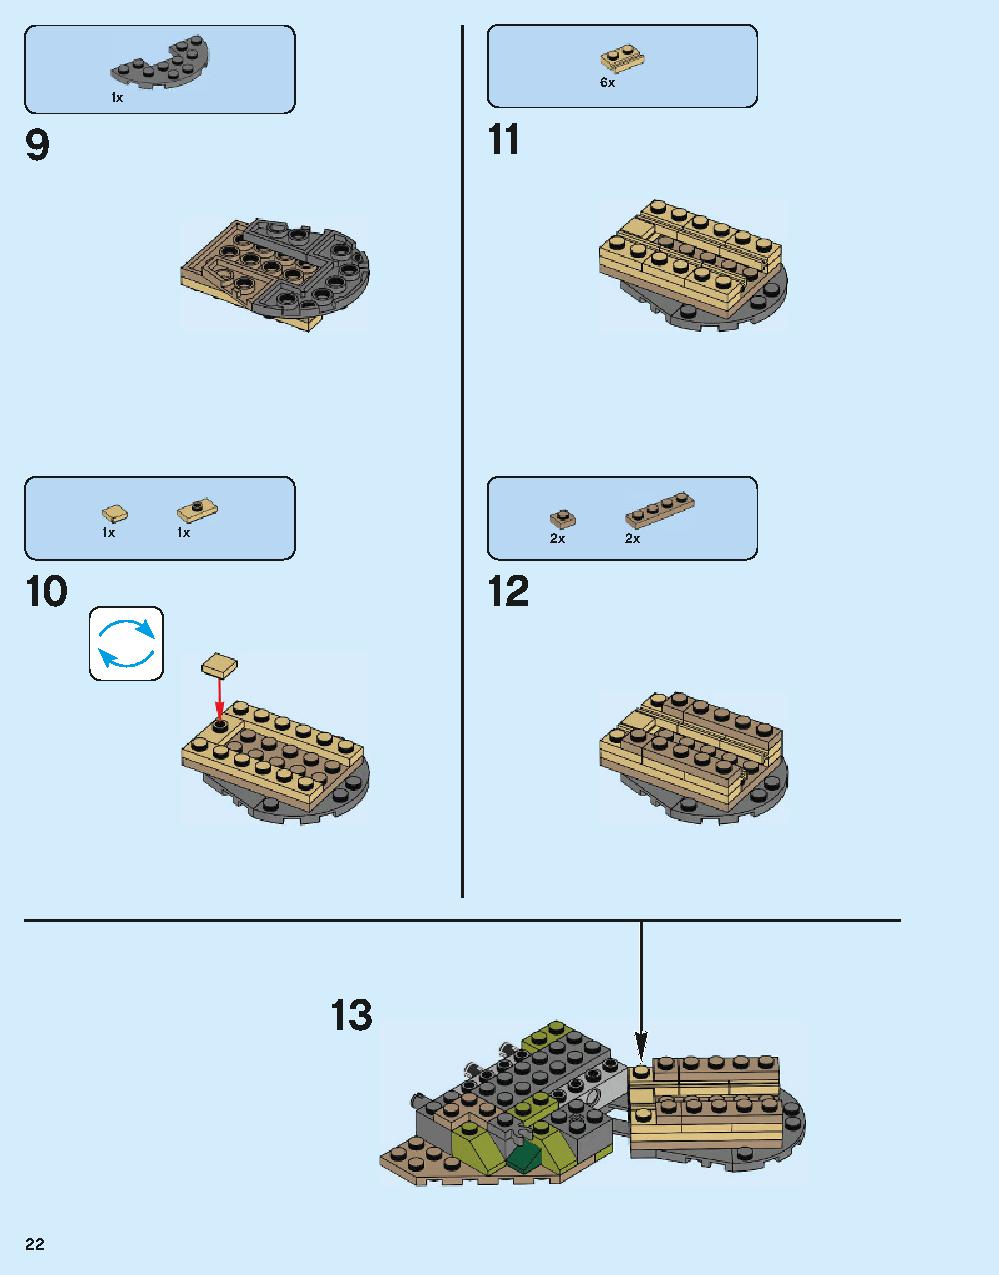 ホグワーツ城 71043 レゴの商品情報 レゴの説明書・組立方法 22 page